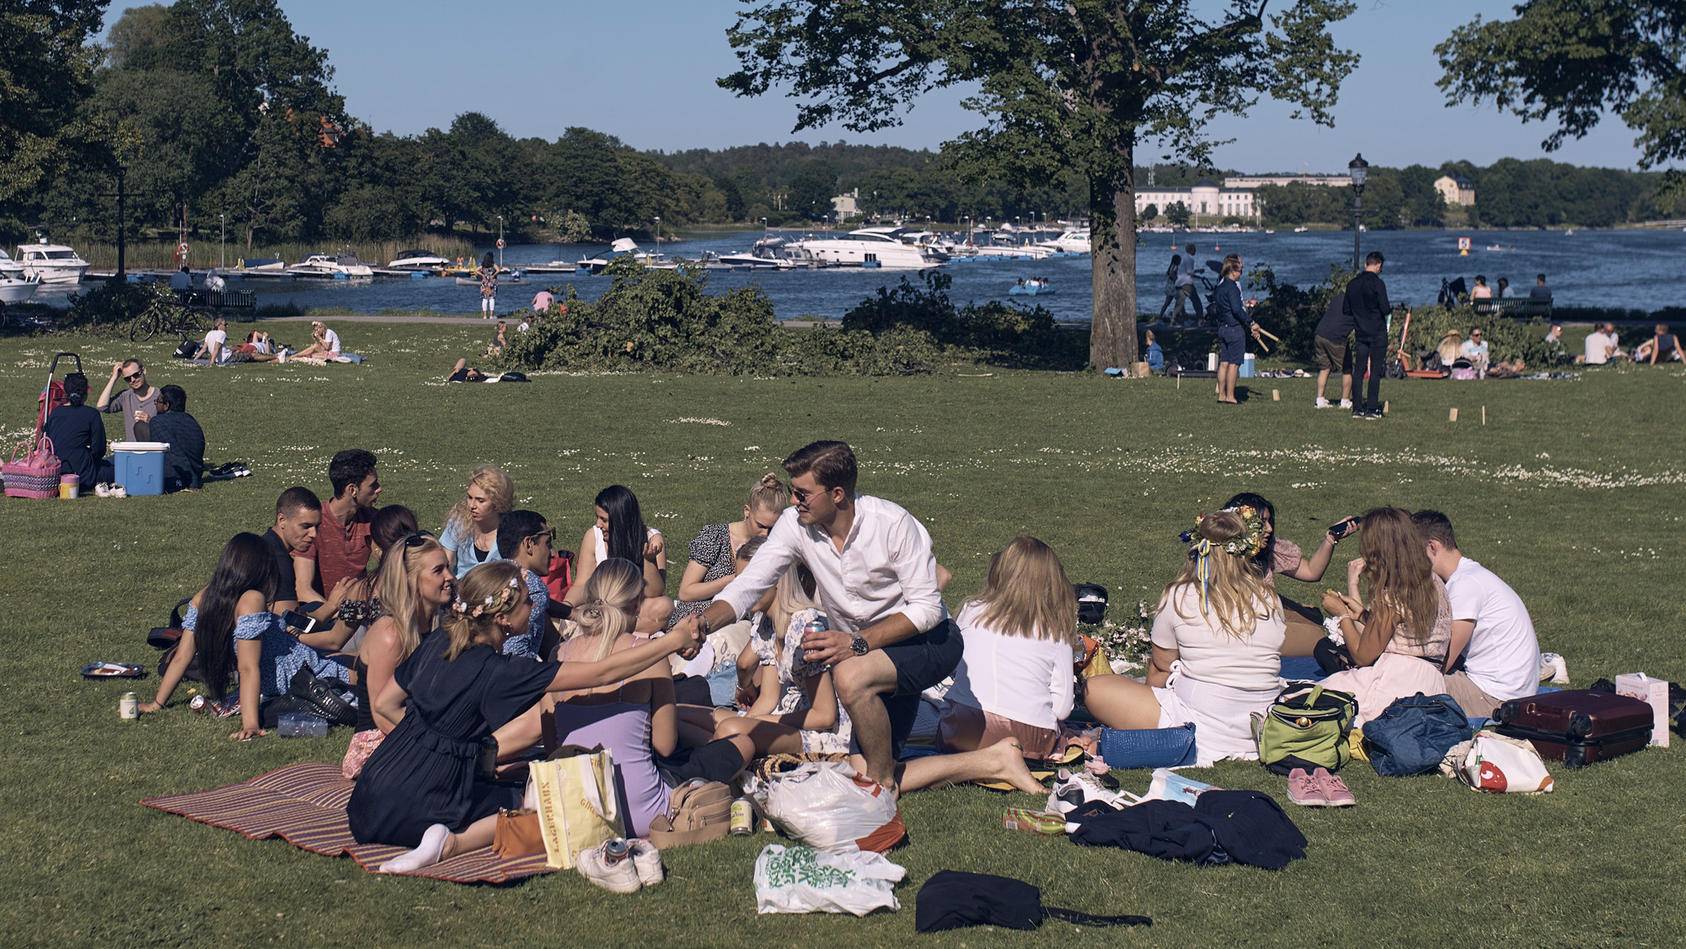 19.06.2020, Schweden, Stockholm: Eine Gruppe junger Menschen picknickt während der jährlichen Mittsommerfeierlichkeiten Schweden und Finnen haben ihr diesjähriges Mittsommer-Fest eingeleitet. Wegen der Corona-Pandemie mussten viele größere Veranstalt